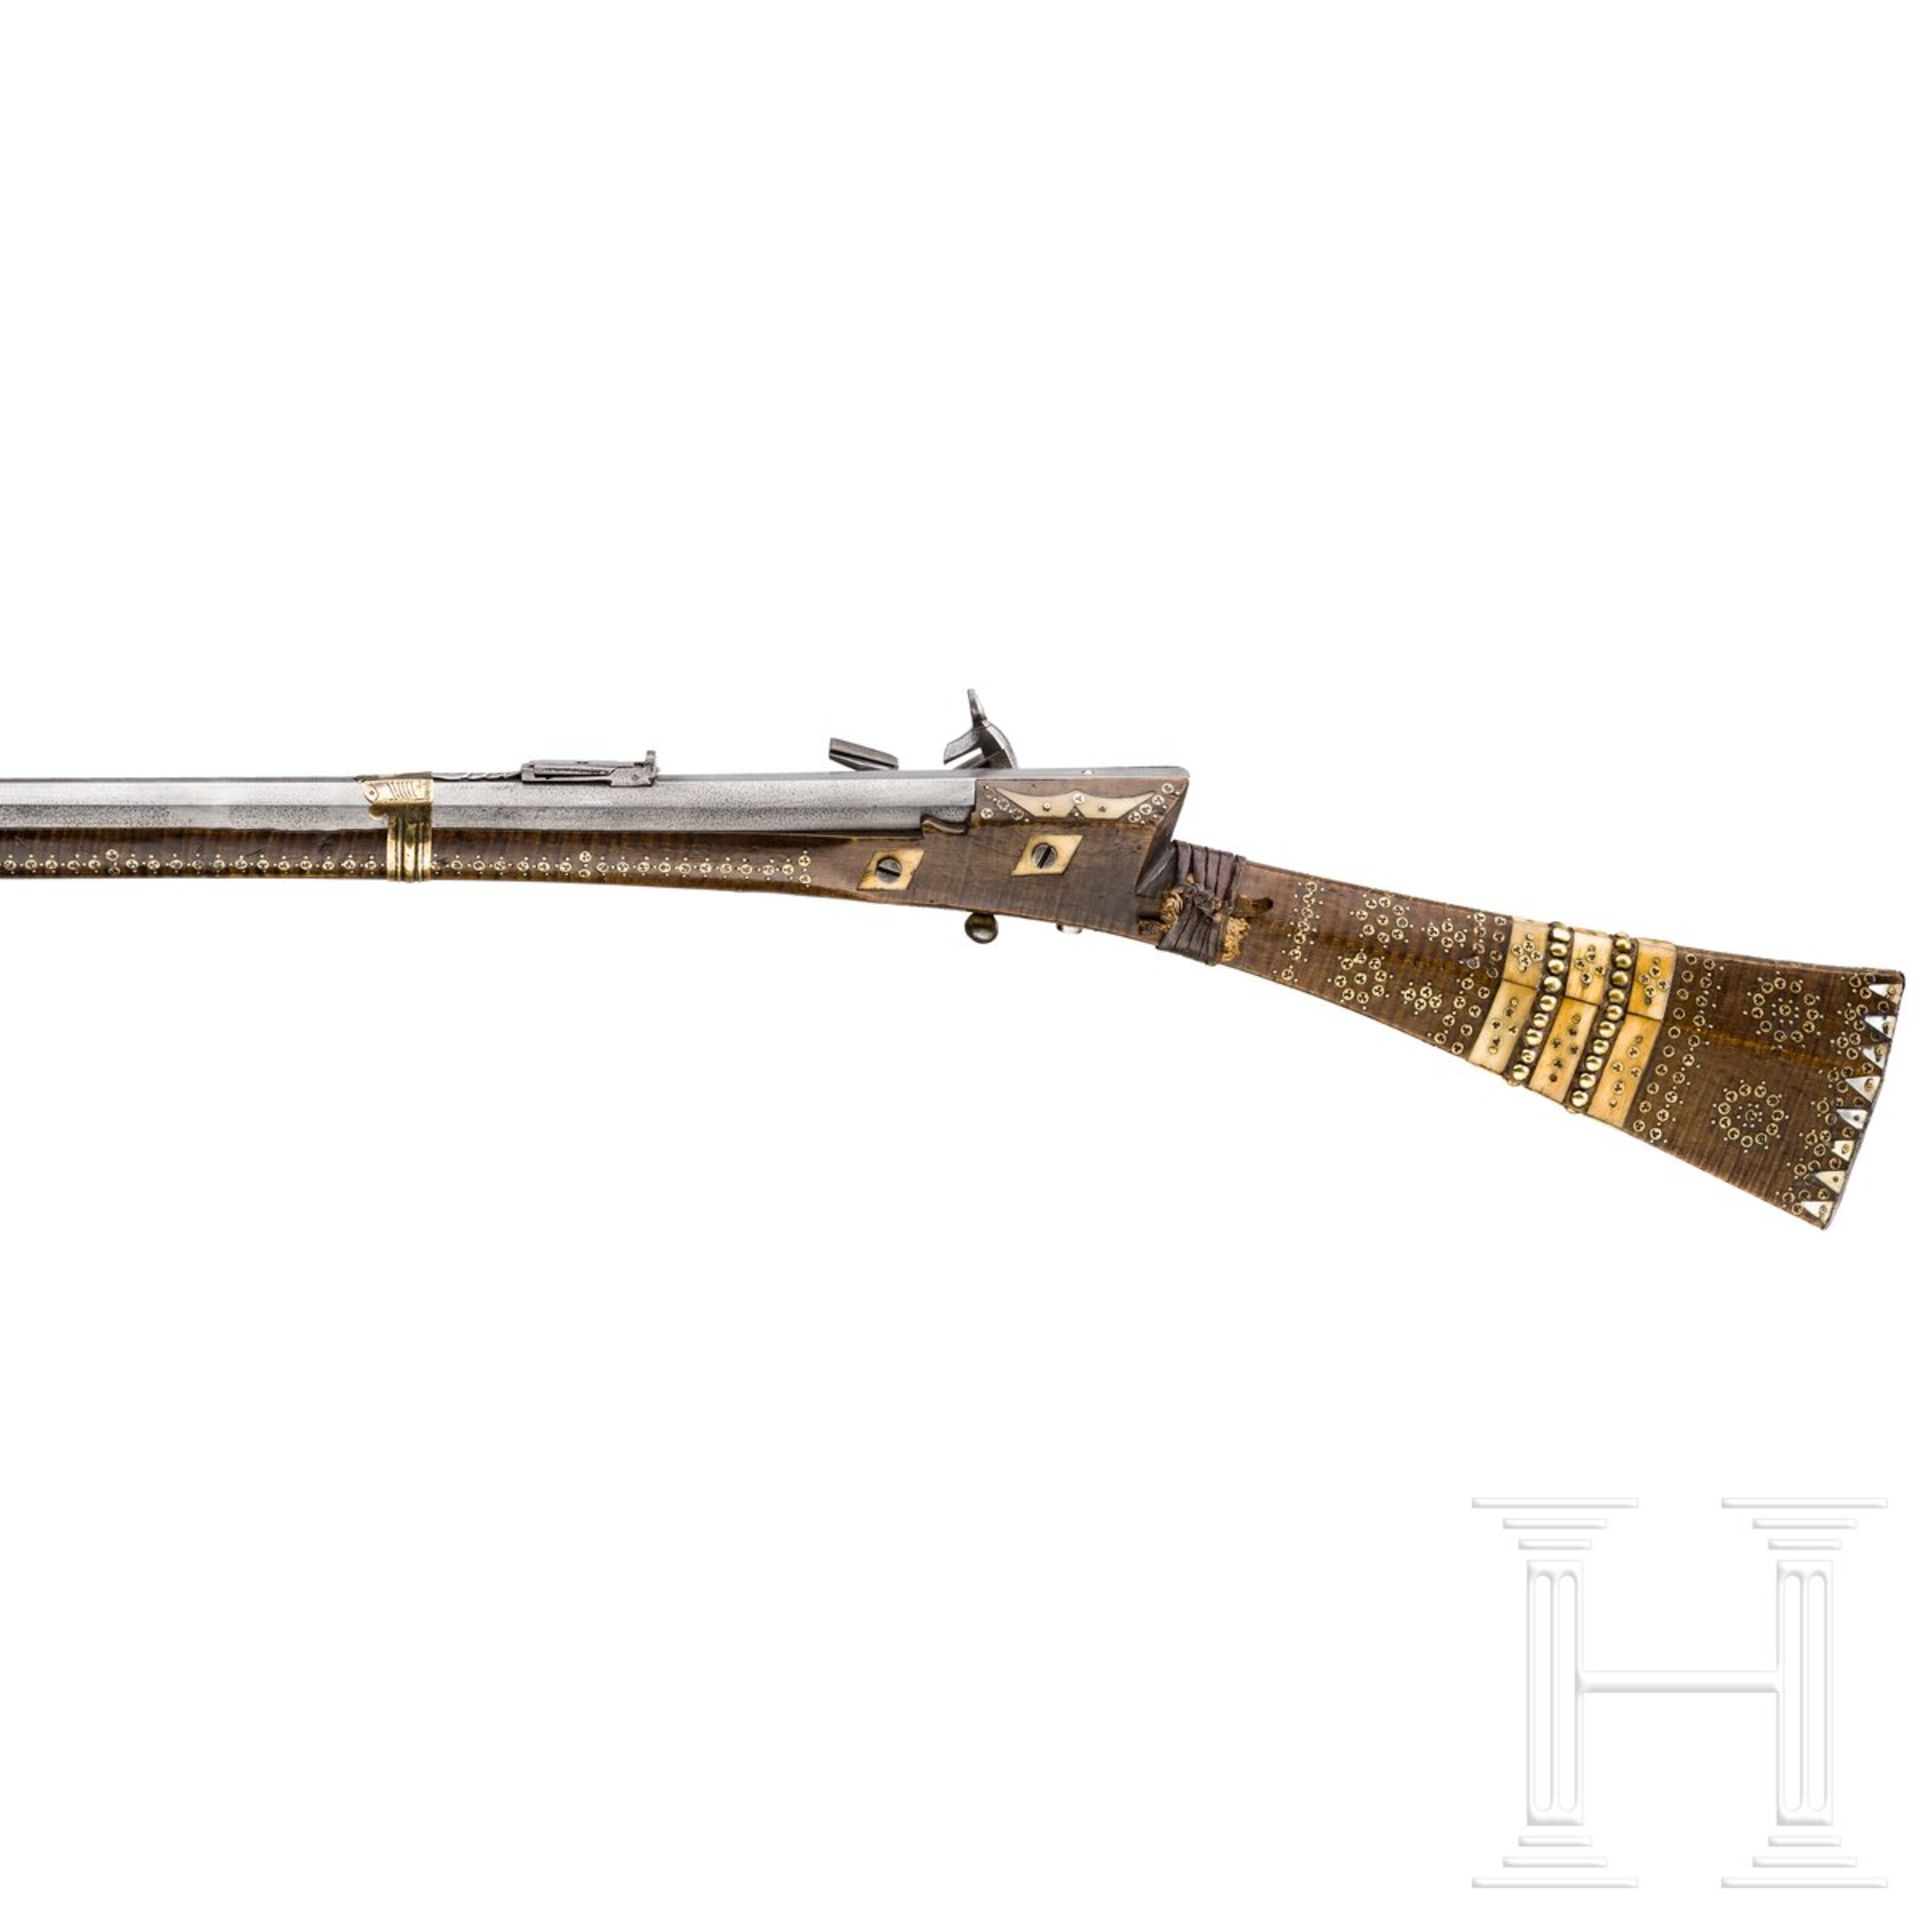 Miqueletbüchse (Tüfek), osmanisch, Ende 18. Jhdt. - Bild 2 aus 4